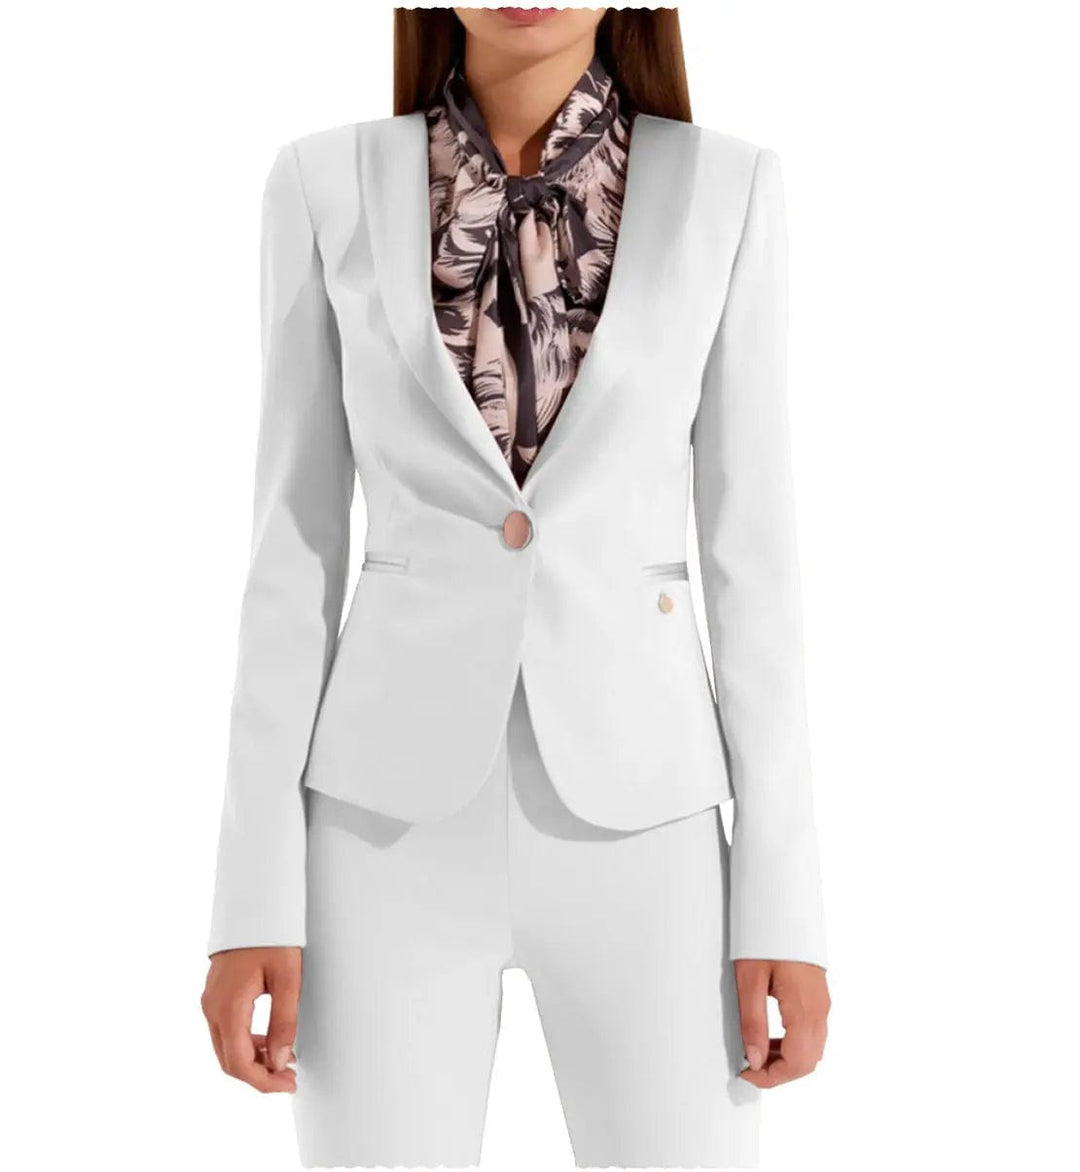 solovedress Business Flat Shawl Lapel 2 Pieces Women Suit